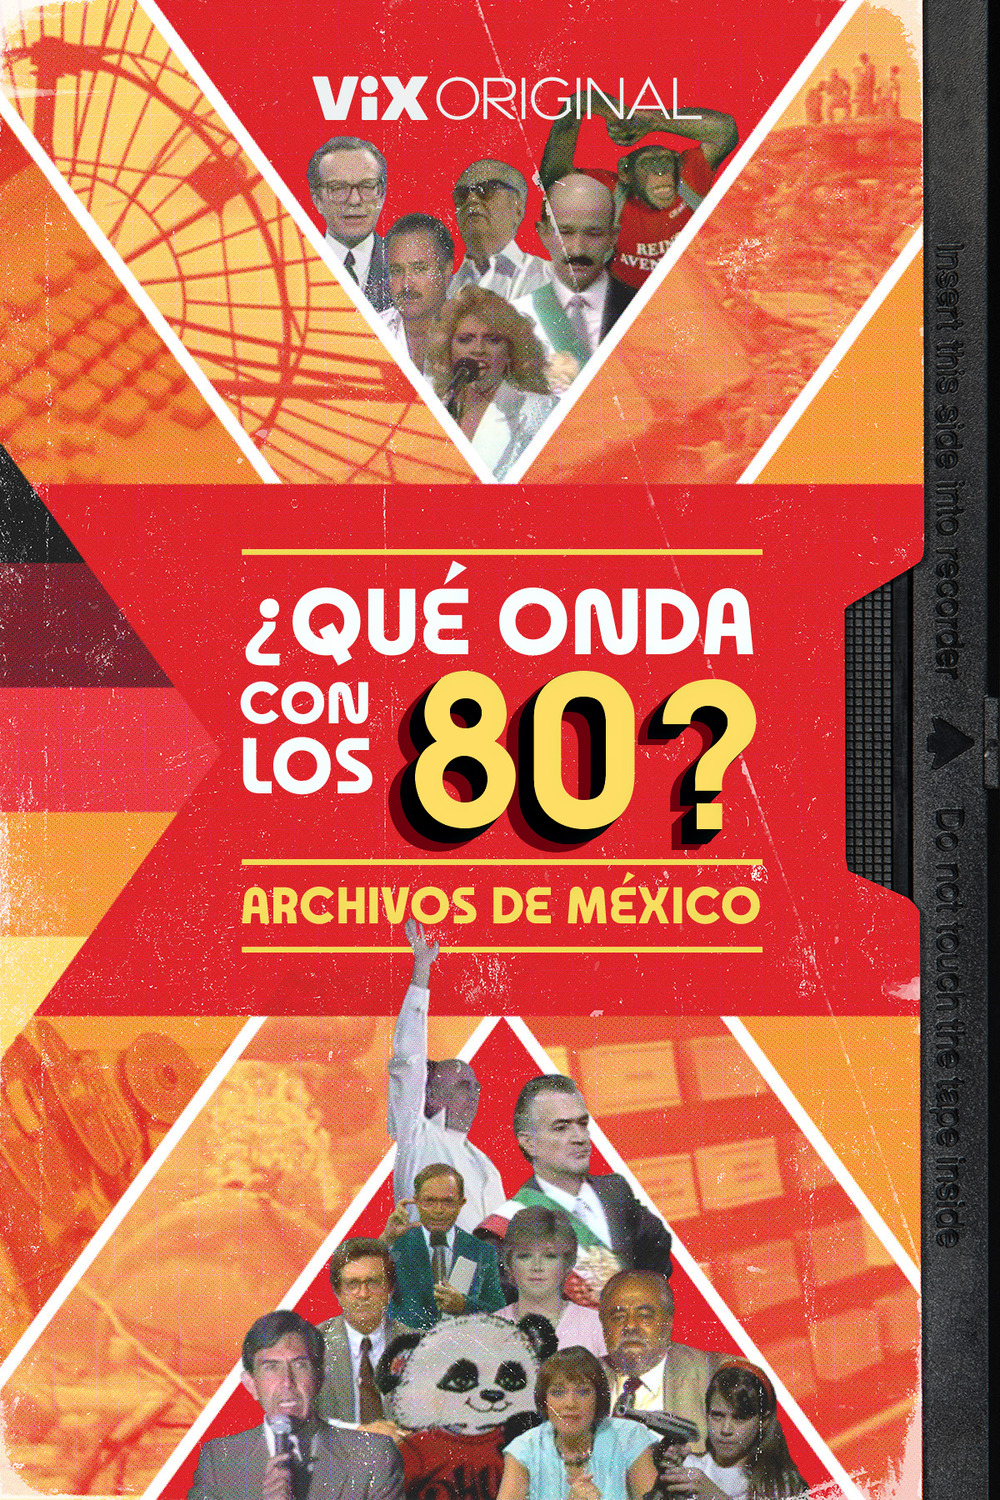 Extra Large TV Poster Image for  ¿Qué Onda Con Los 80?: Archivos De México 